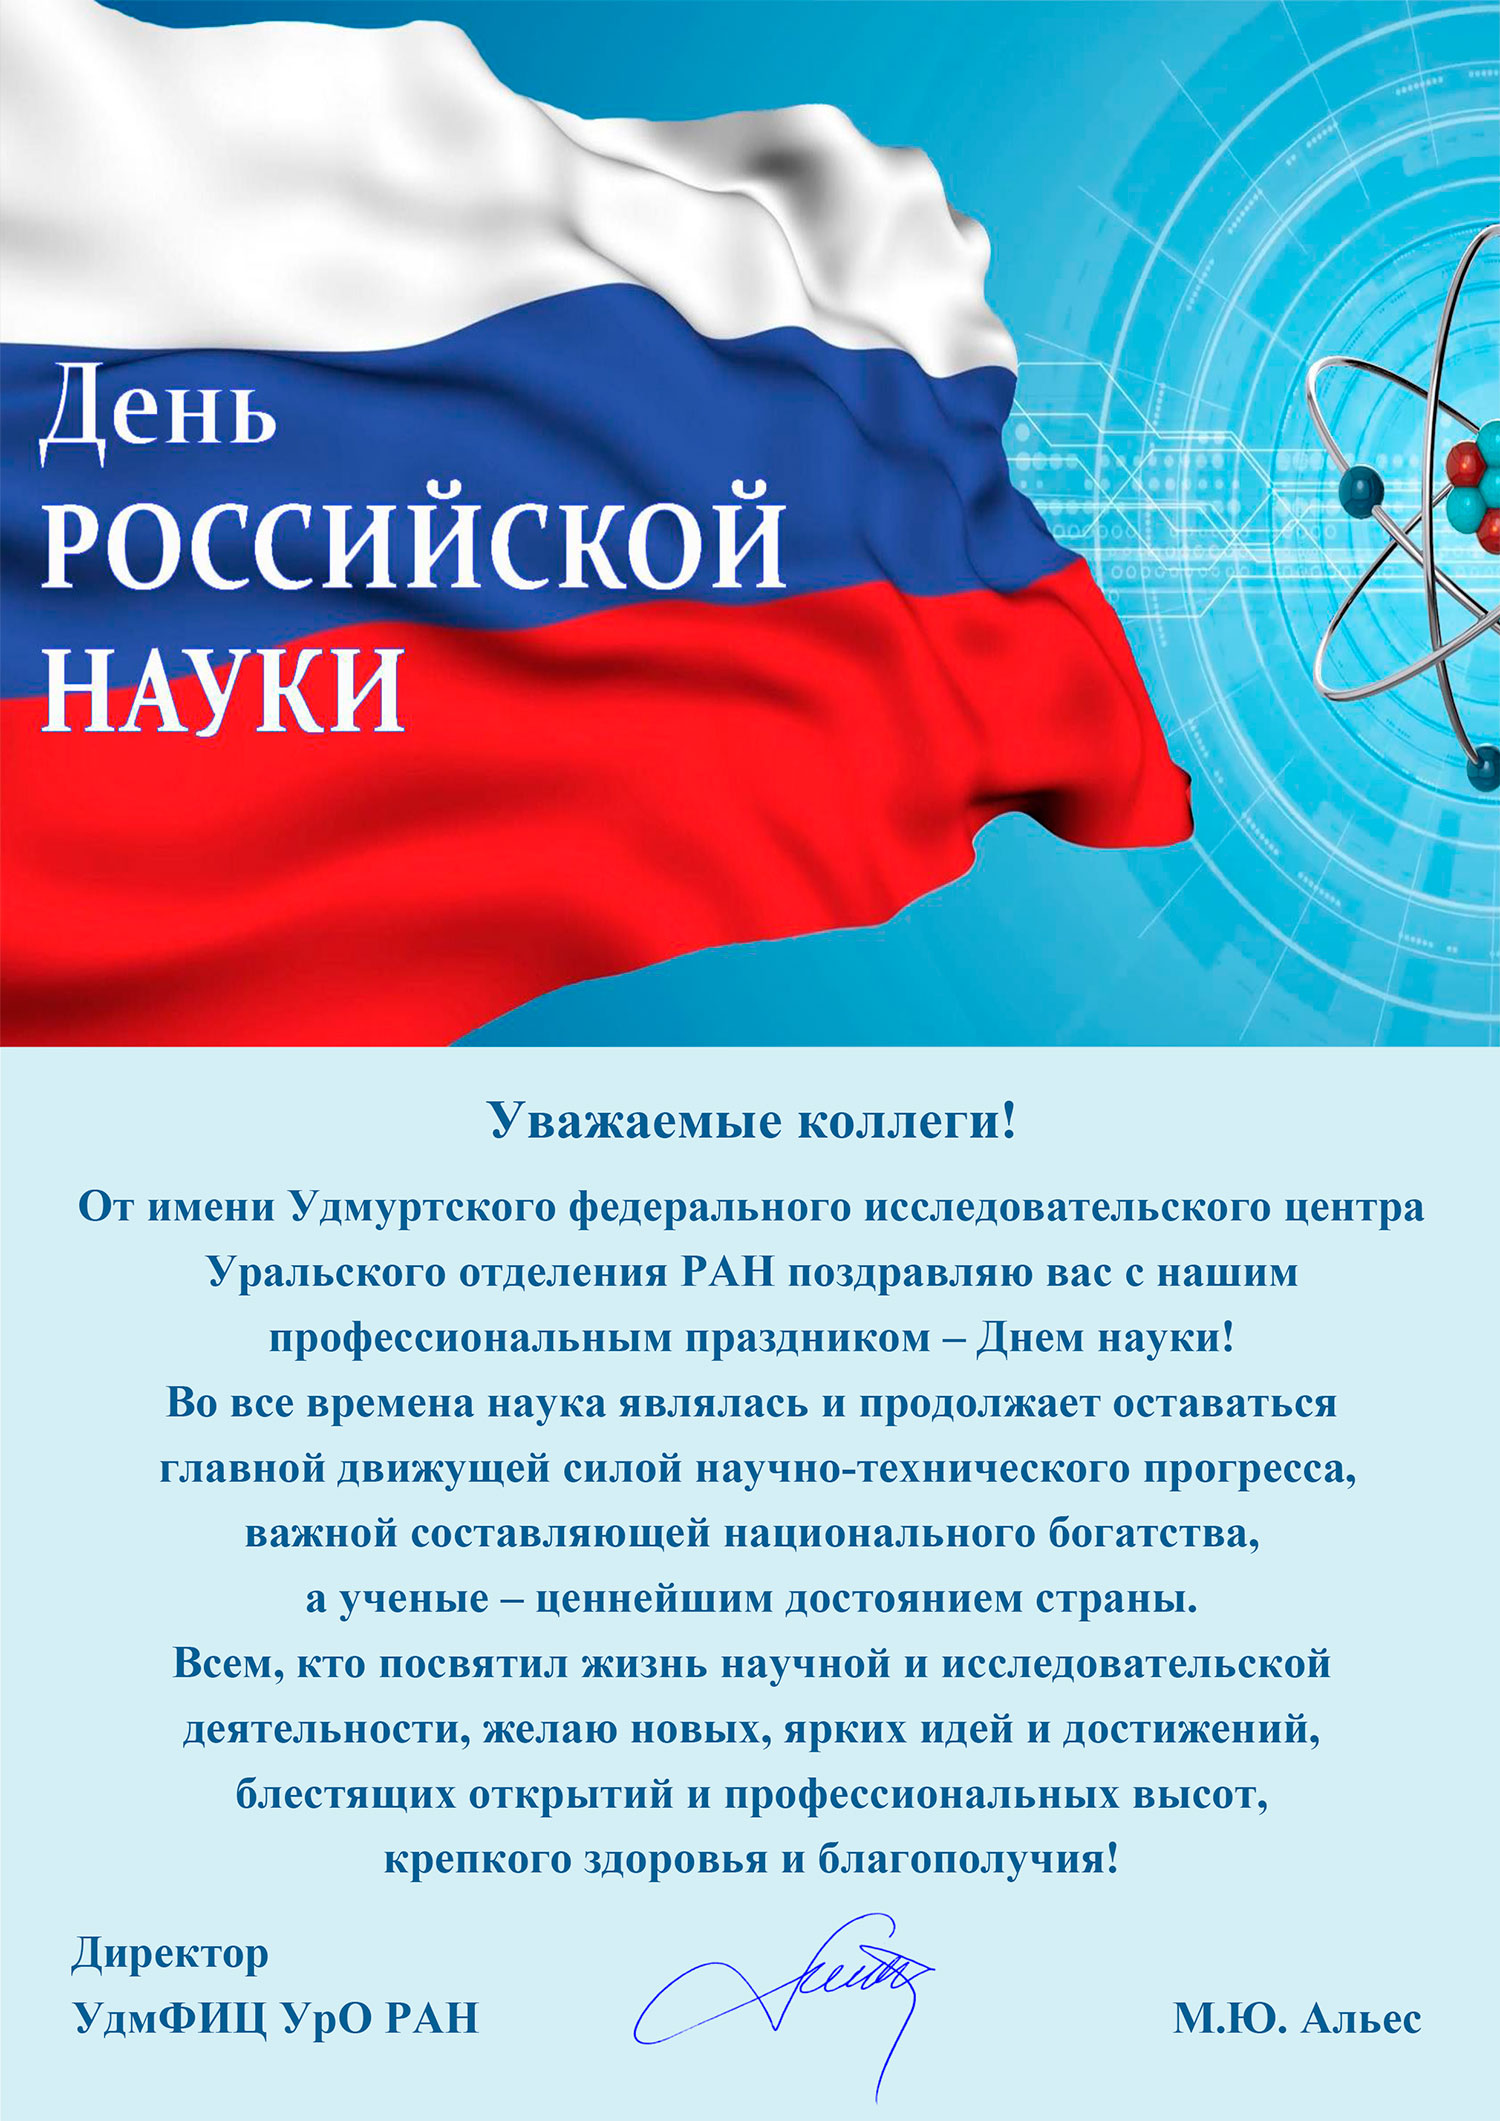 Открытка с днем науки в России